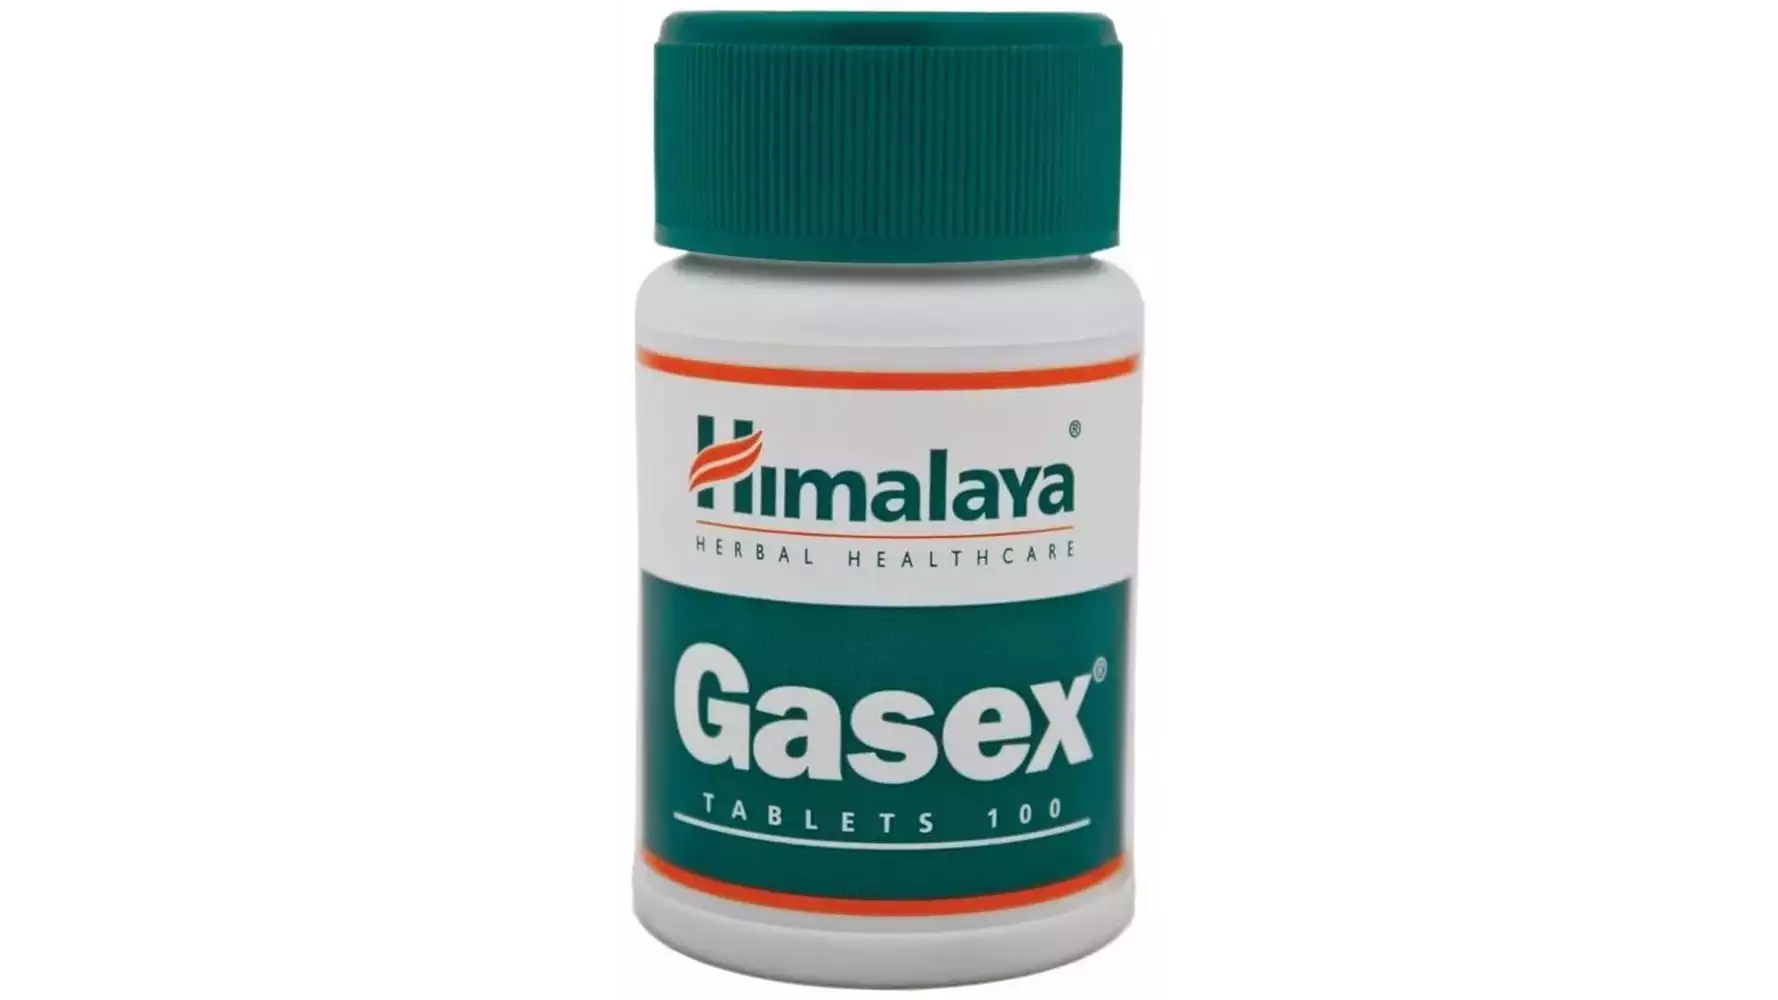 Himalaya Gasex Tablet (100tab)